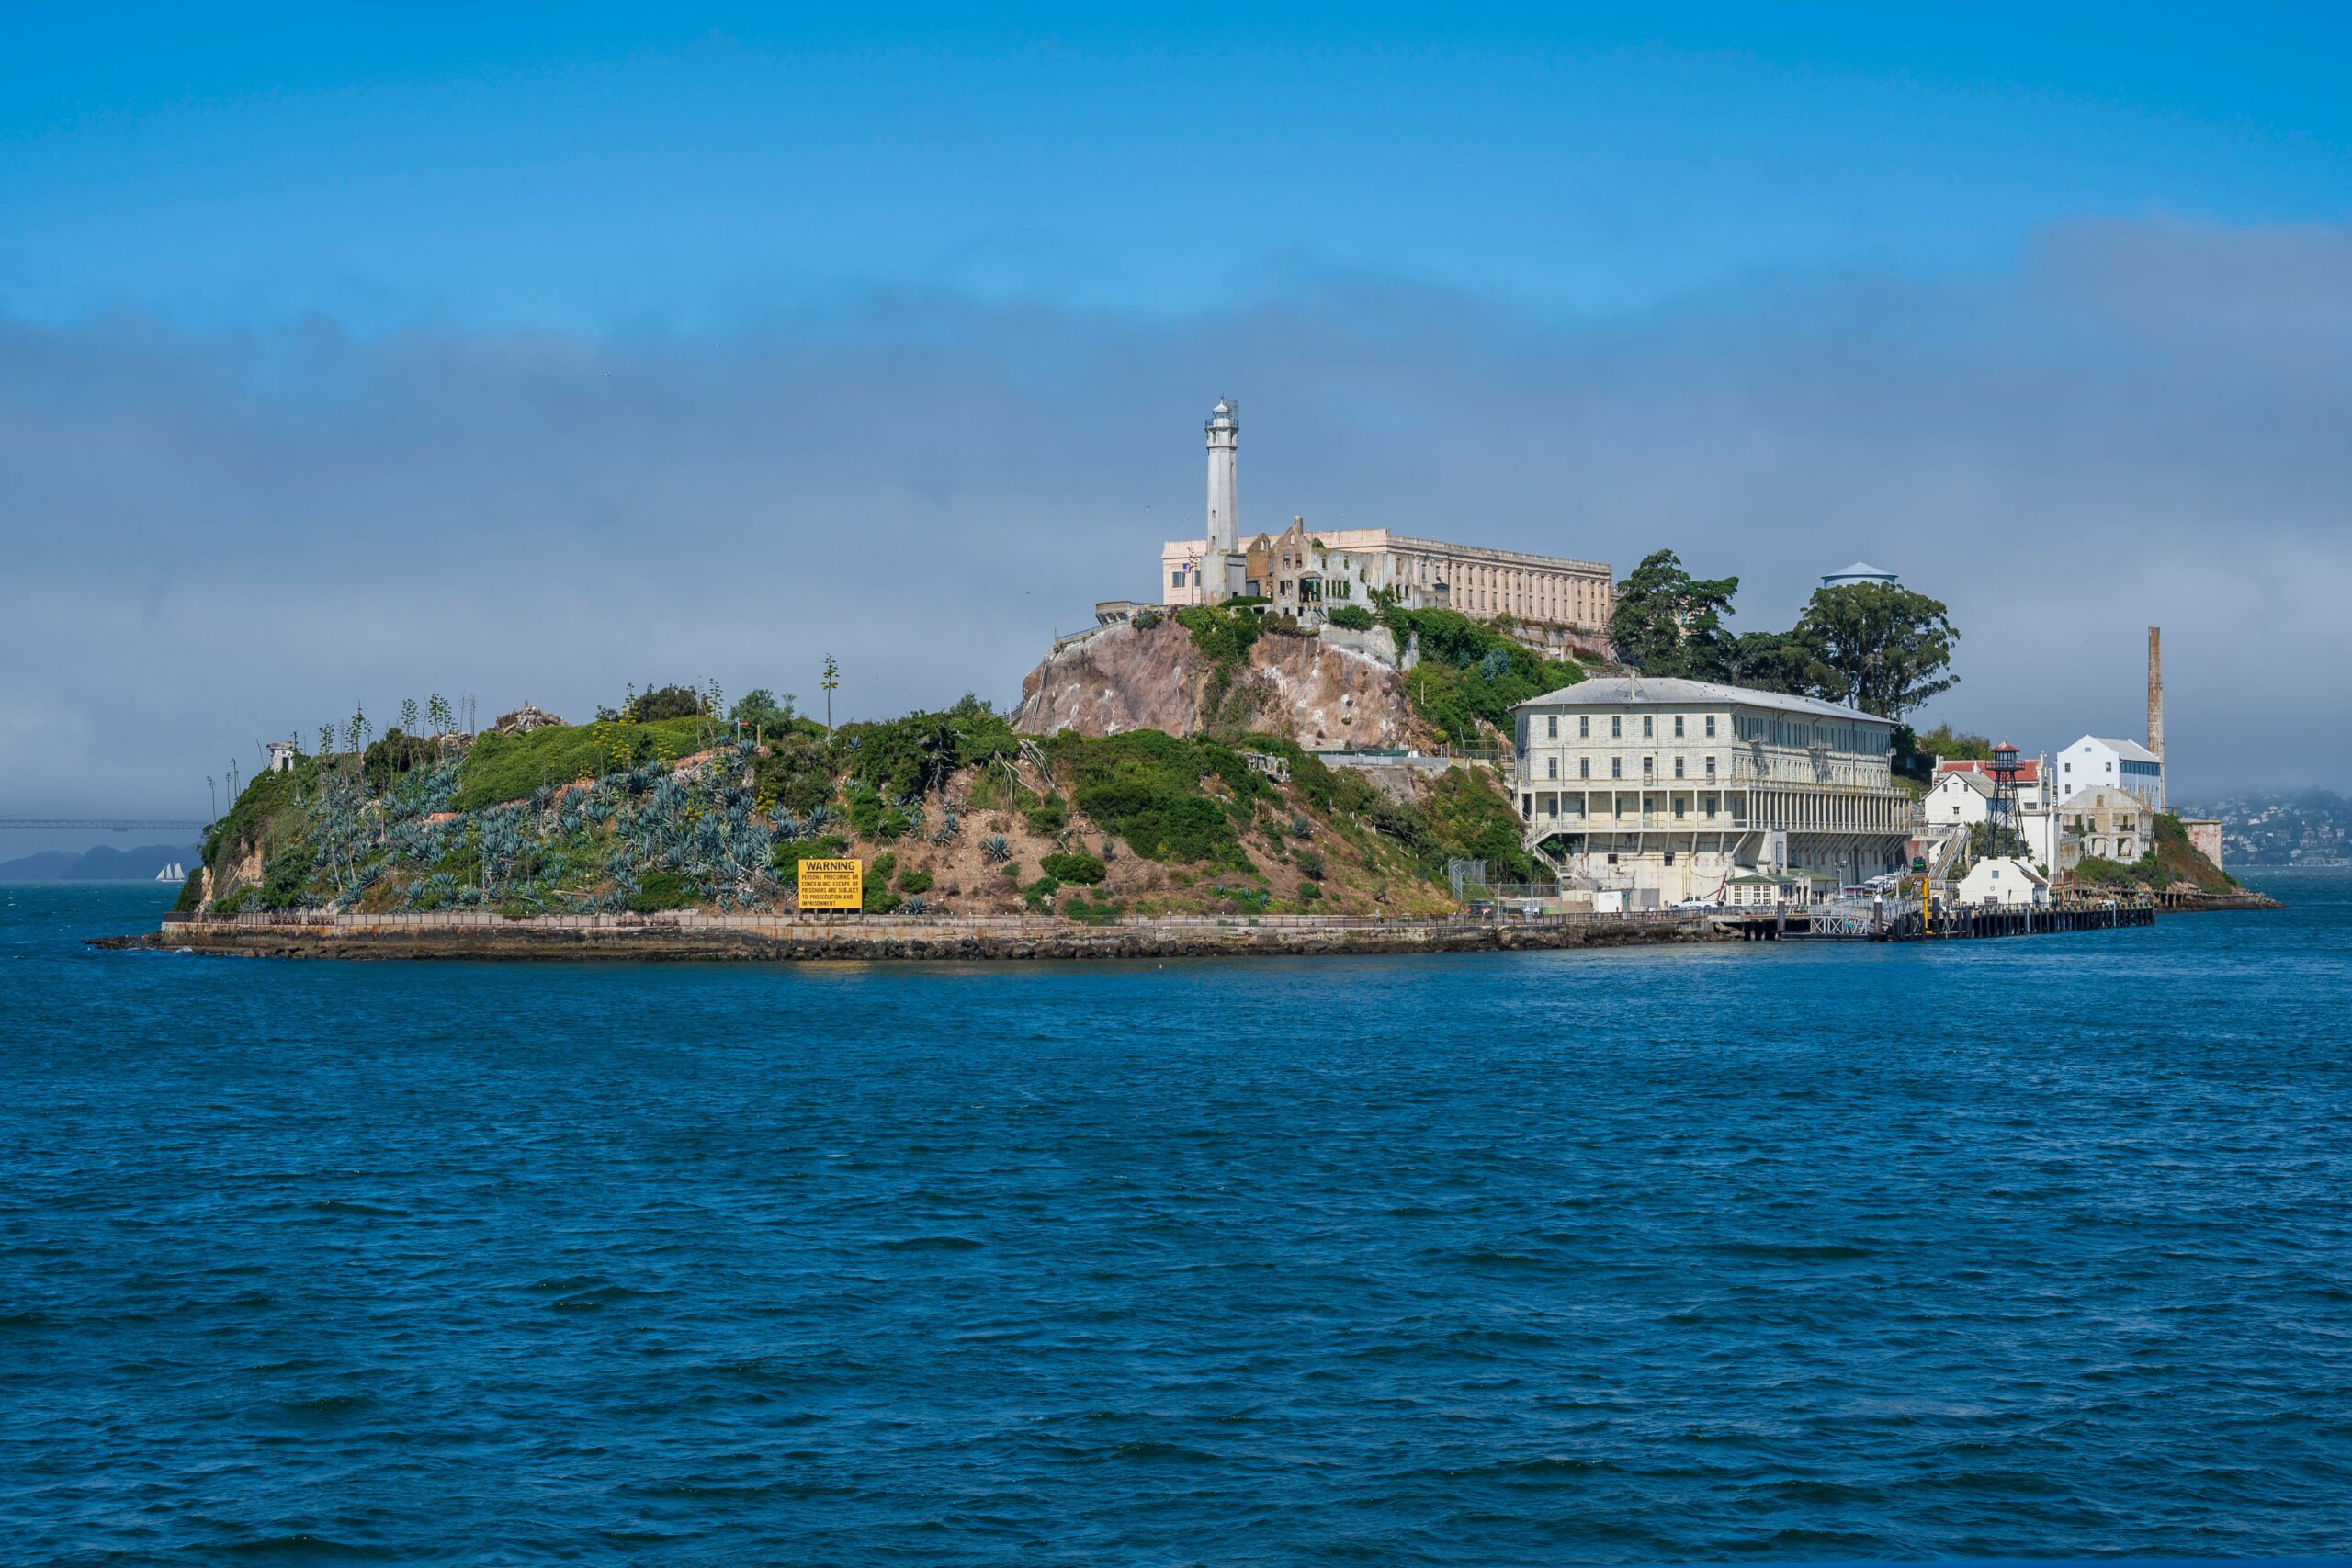 An image of Alcatraz prison